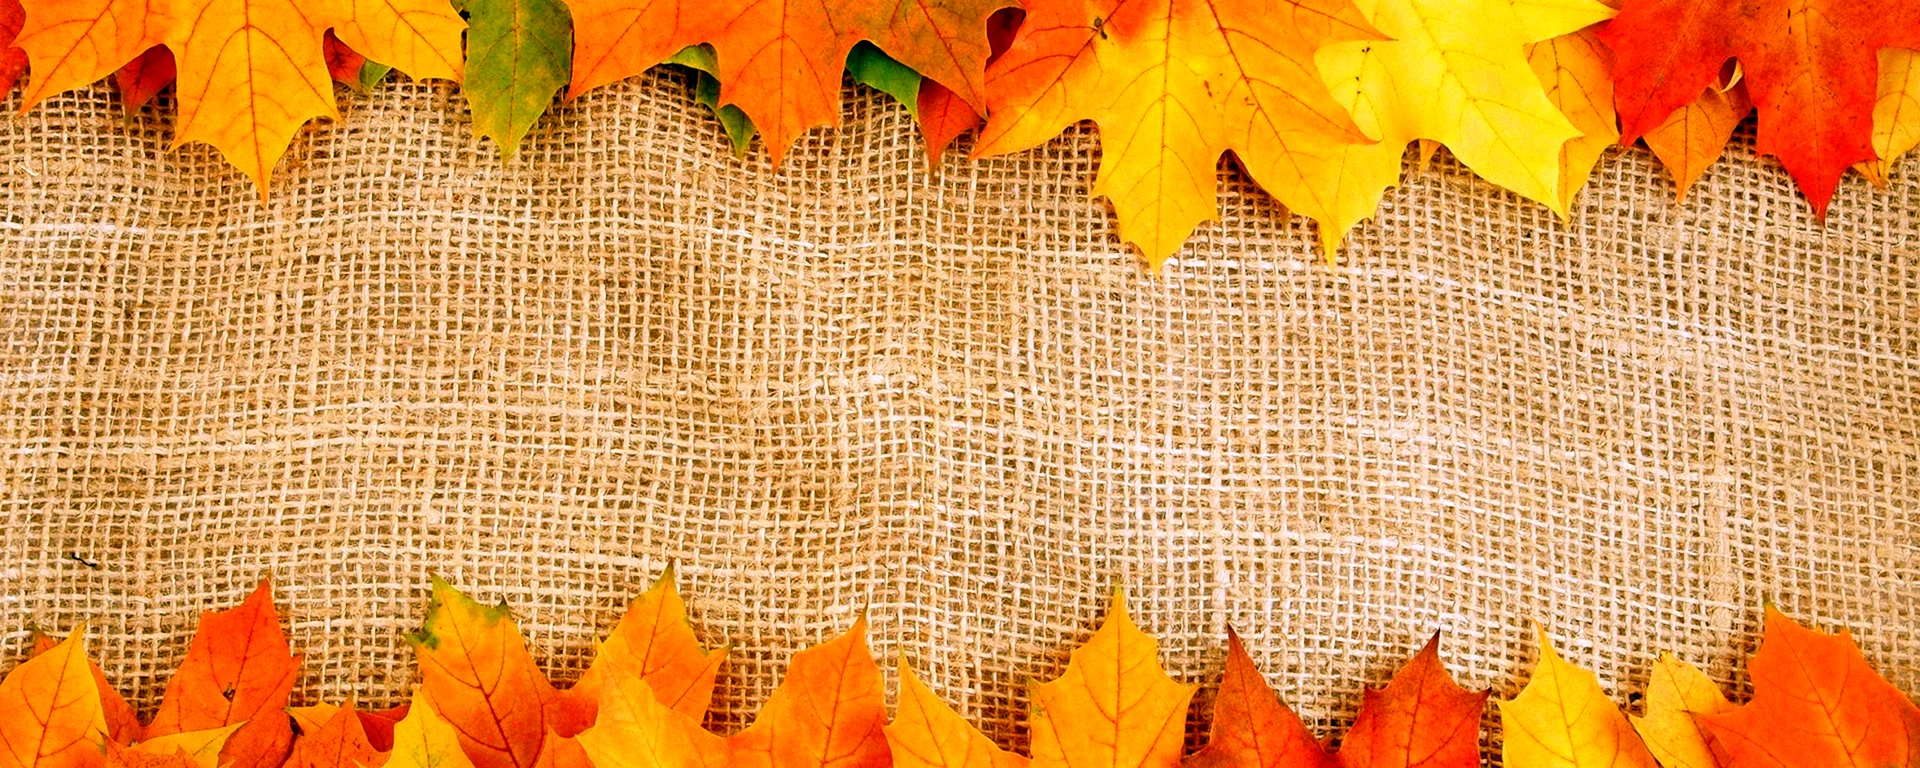 Осенний фон для баннера